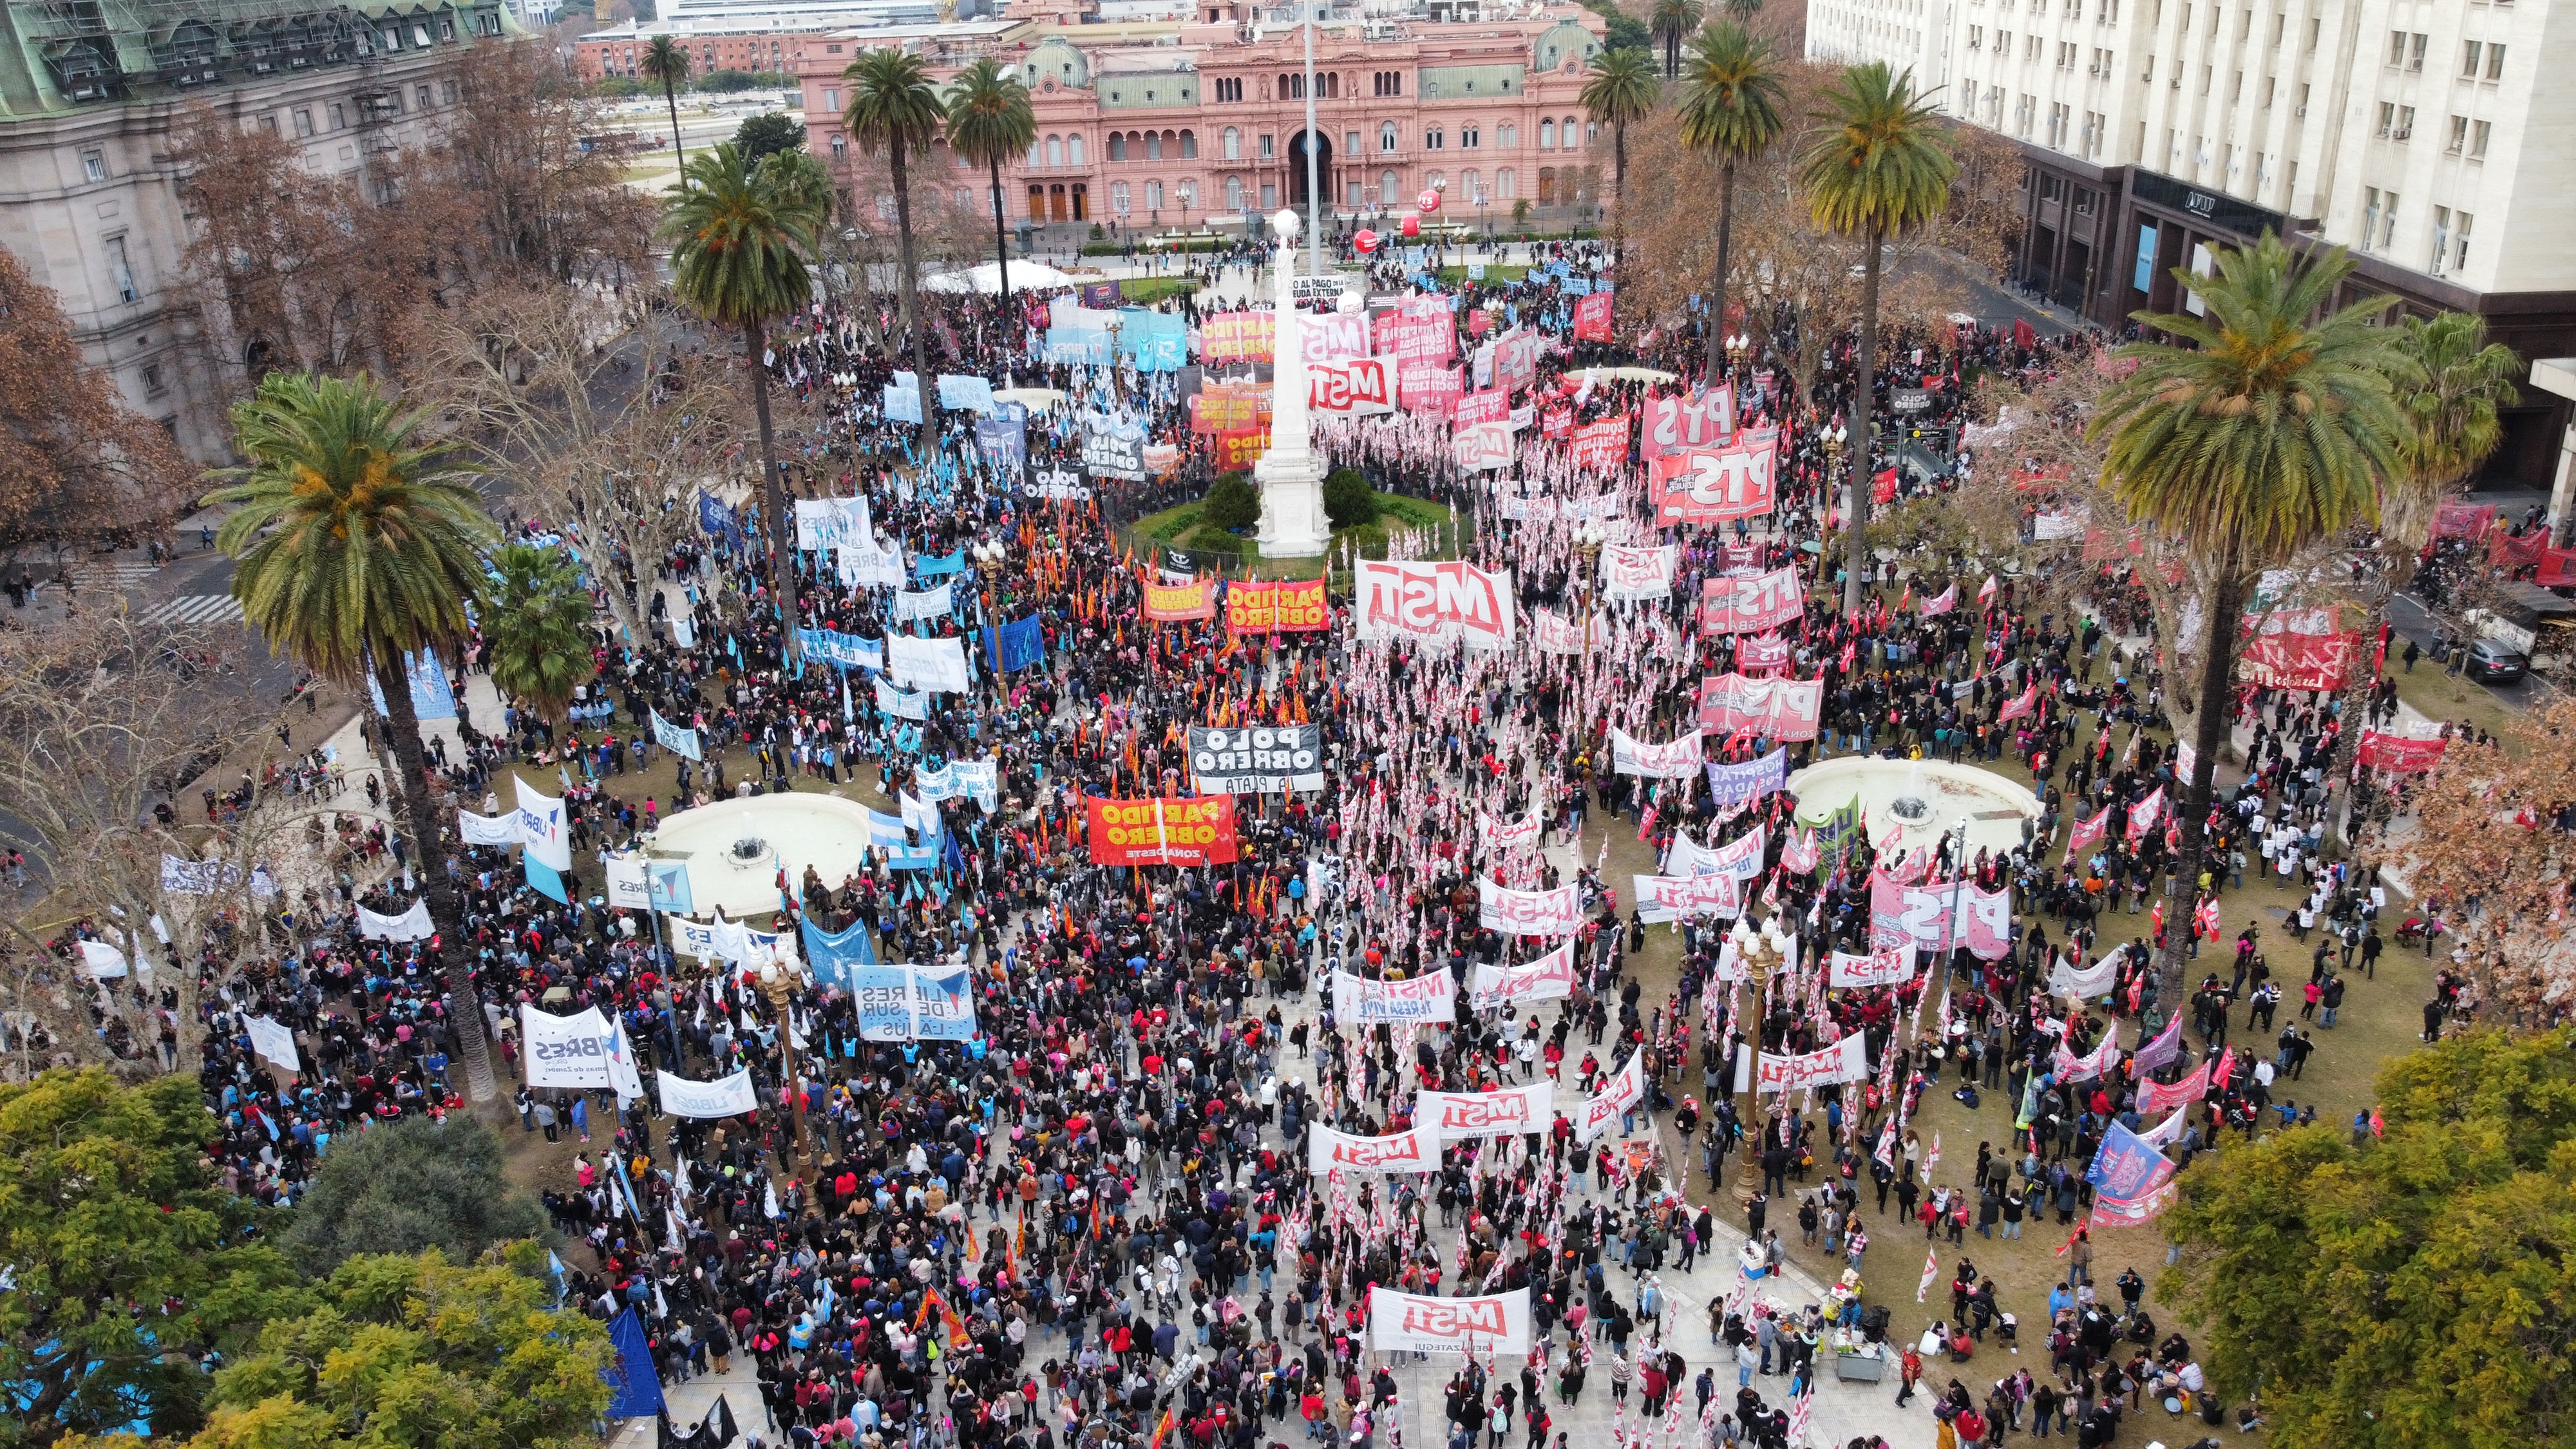 Foto de archivo: hoy volverán las protestas al centro porteño (Franco Fafasuli)